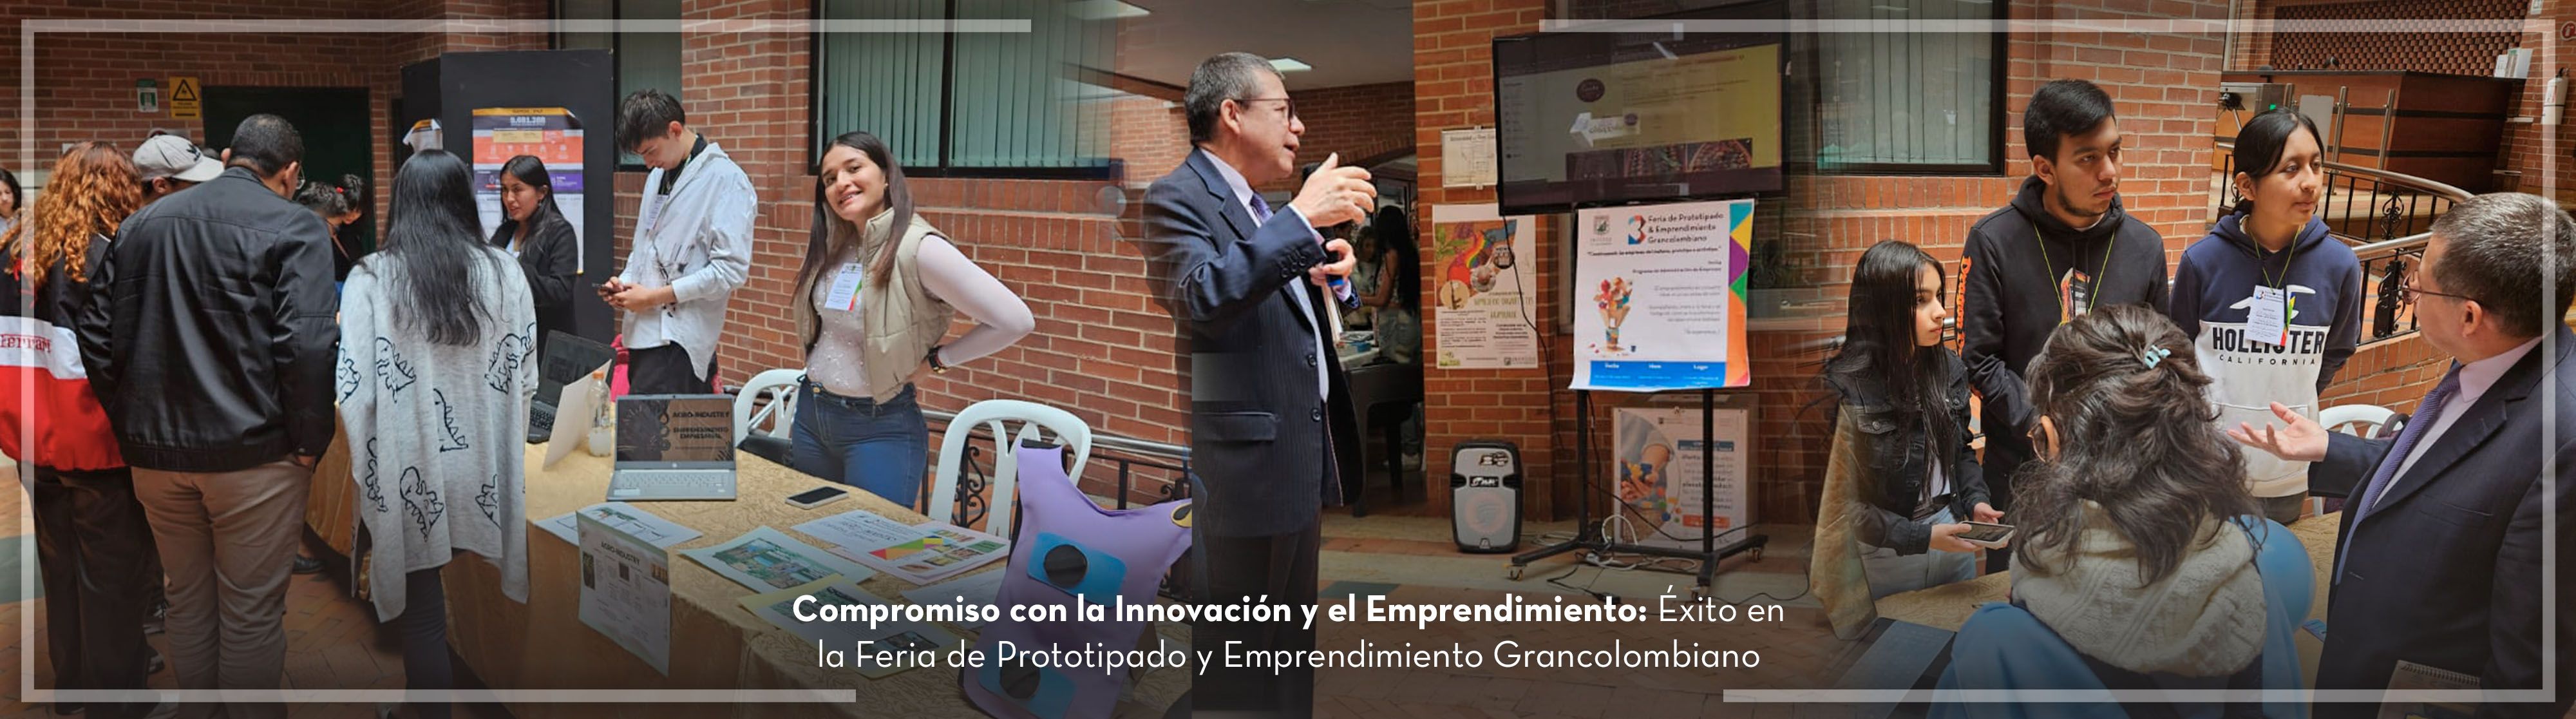 Compromiso con la Innovación y el Emprendimiento: Éxito en la Feria de Prototipado y Emprendimiento Grancolombiano